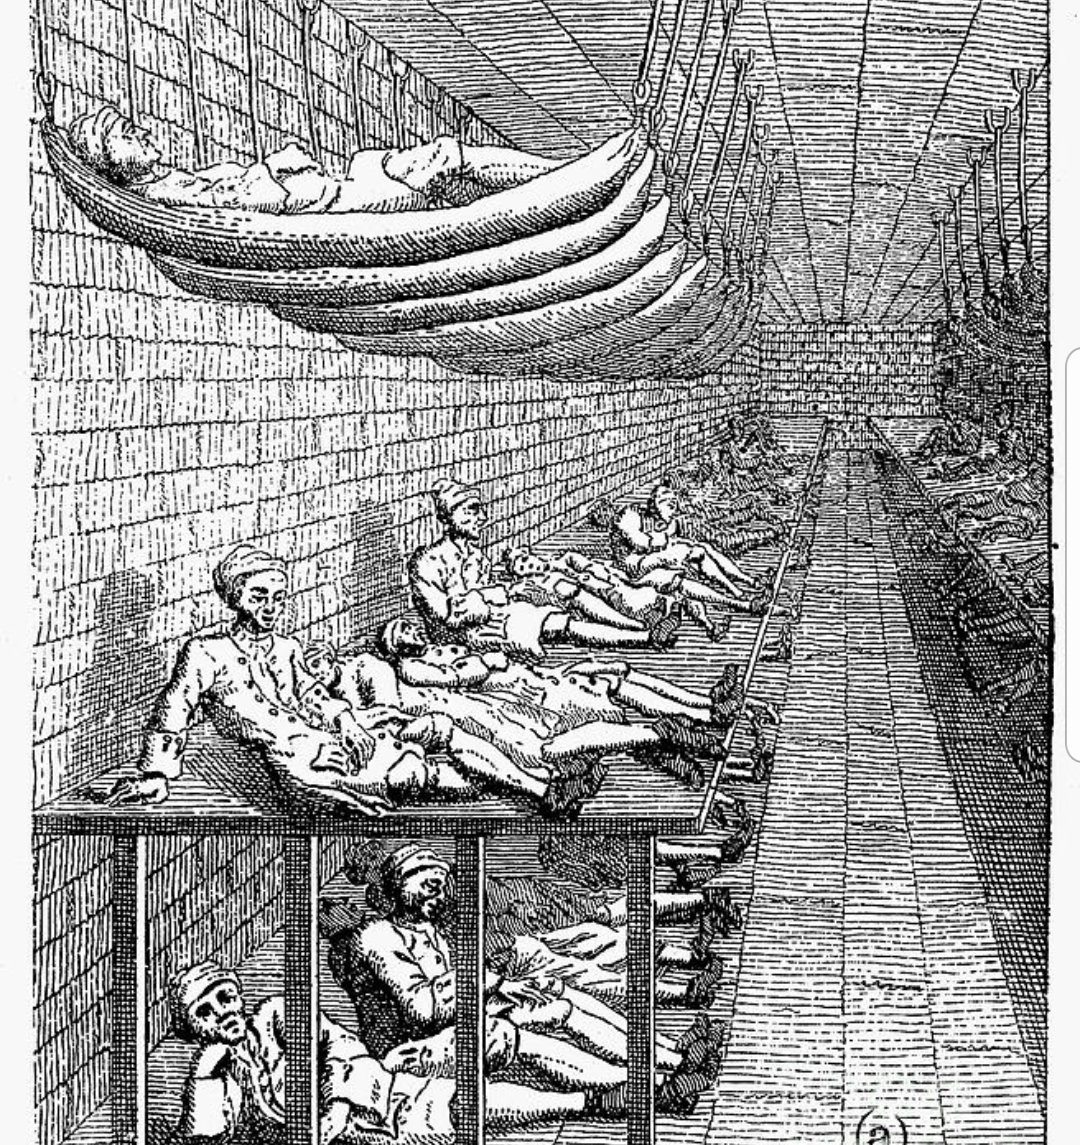 Долговых тюрем. Тюрьма Маршалси в Лондоне. Долговая тюрьма Маршалси. Тюрьма 19 век Лондон. Долговая тюрьма в Англии Диккенс.